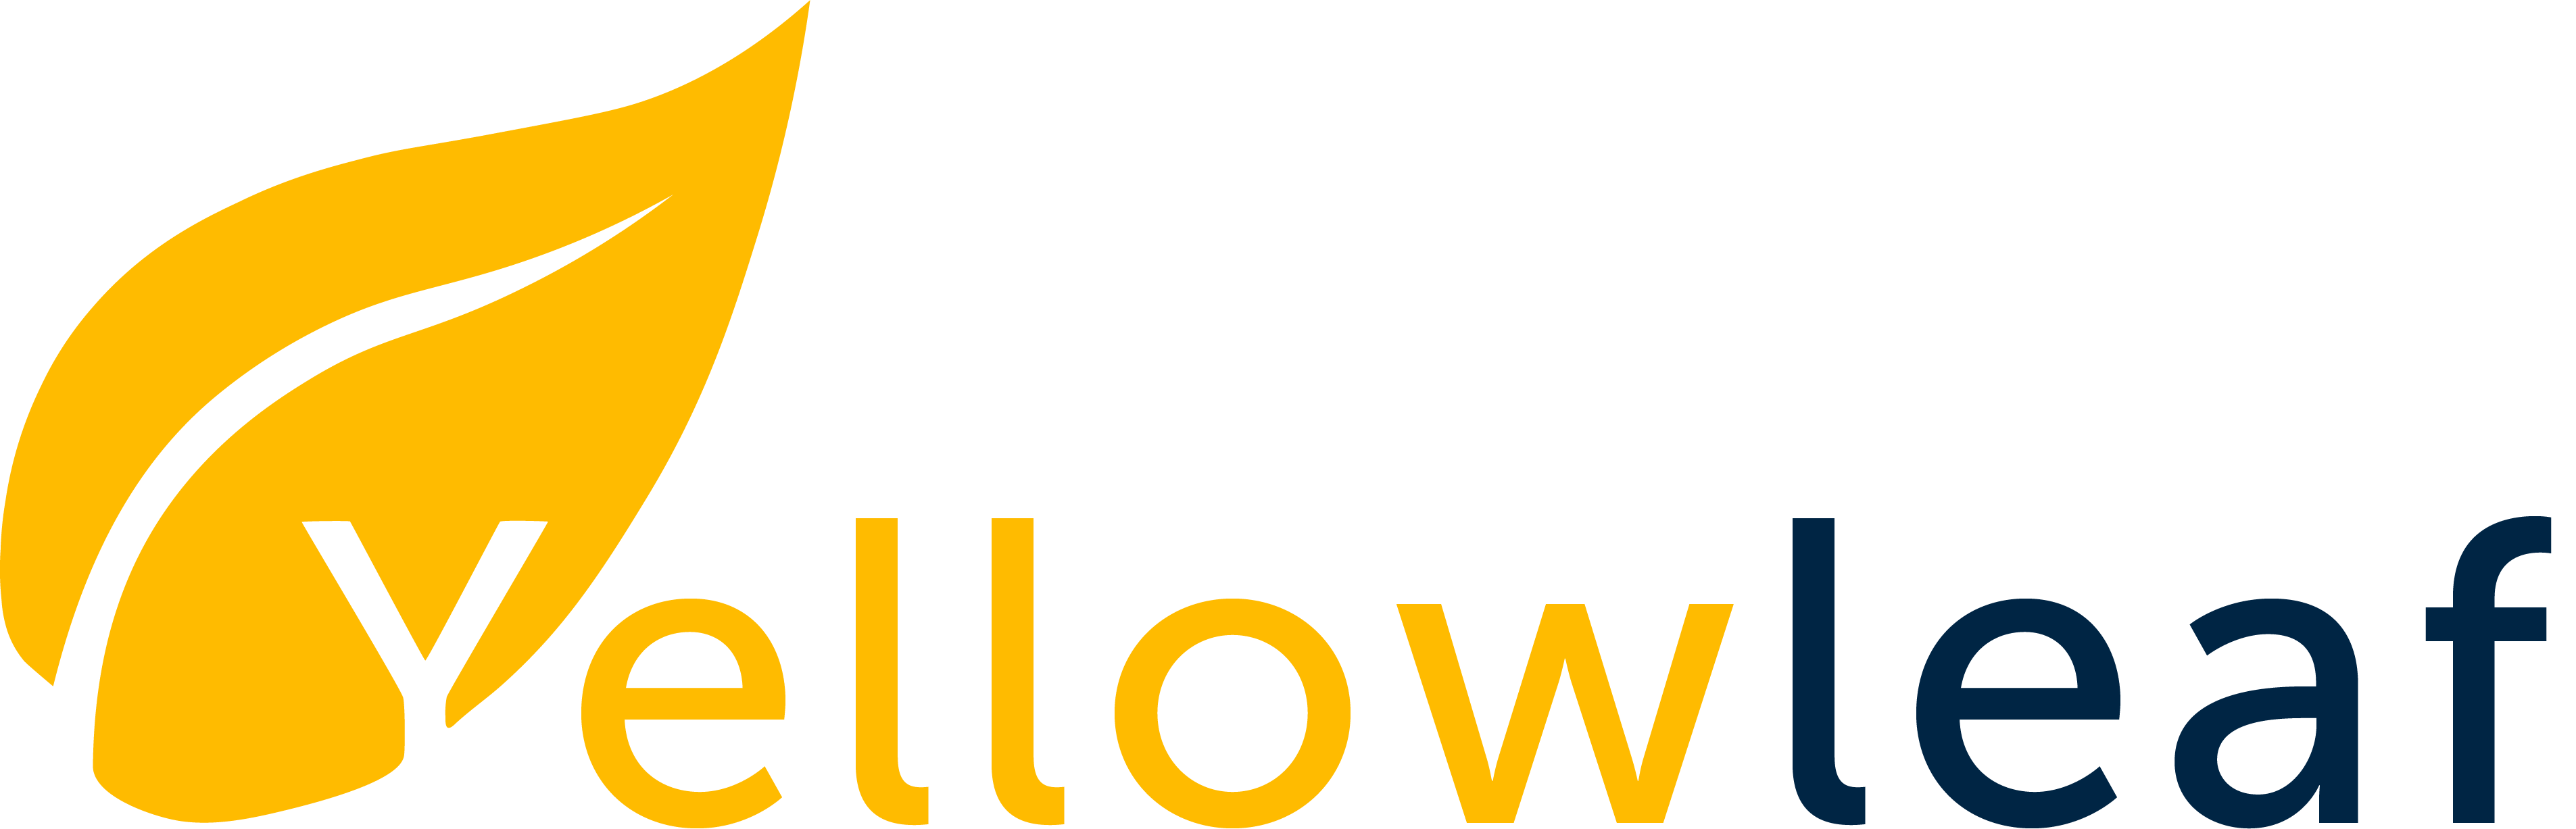 Yellowleaf